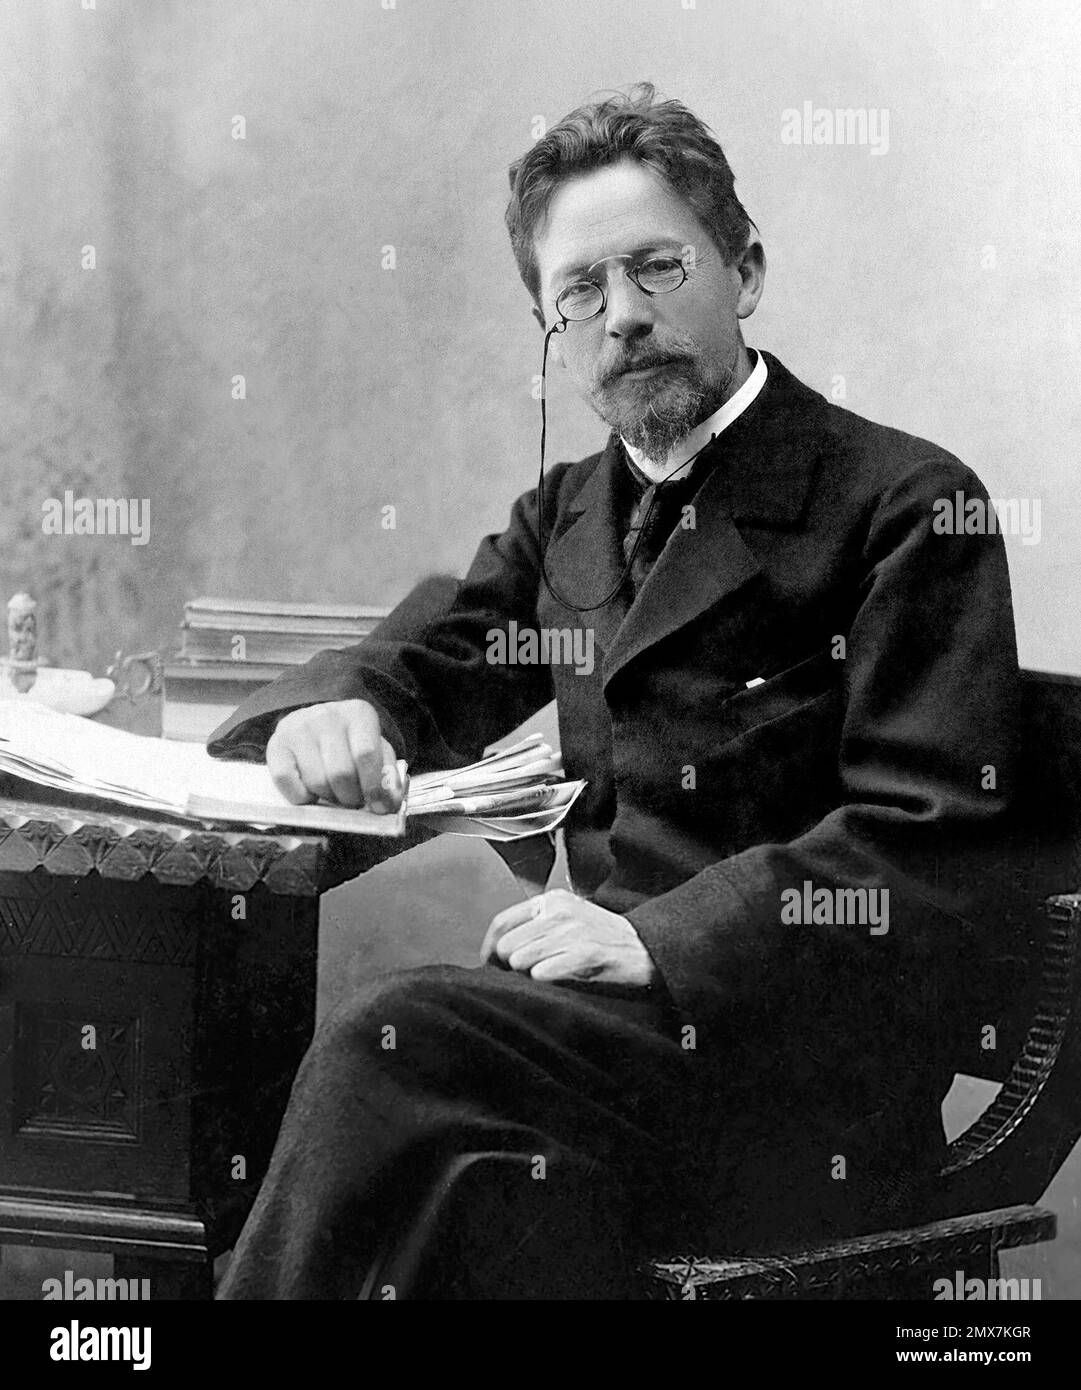 Anton Chekhov. Portrait du dramaturge russe Anton Pavlovich Chekhov (1860-1904),1889 Banque D'Images